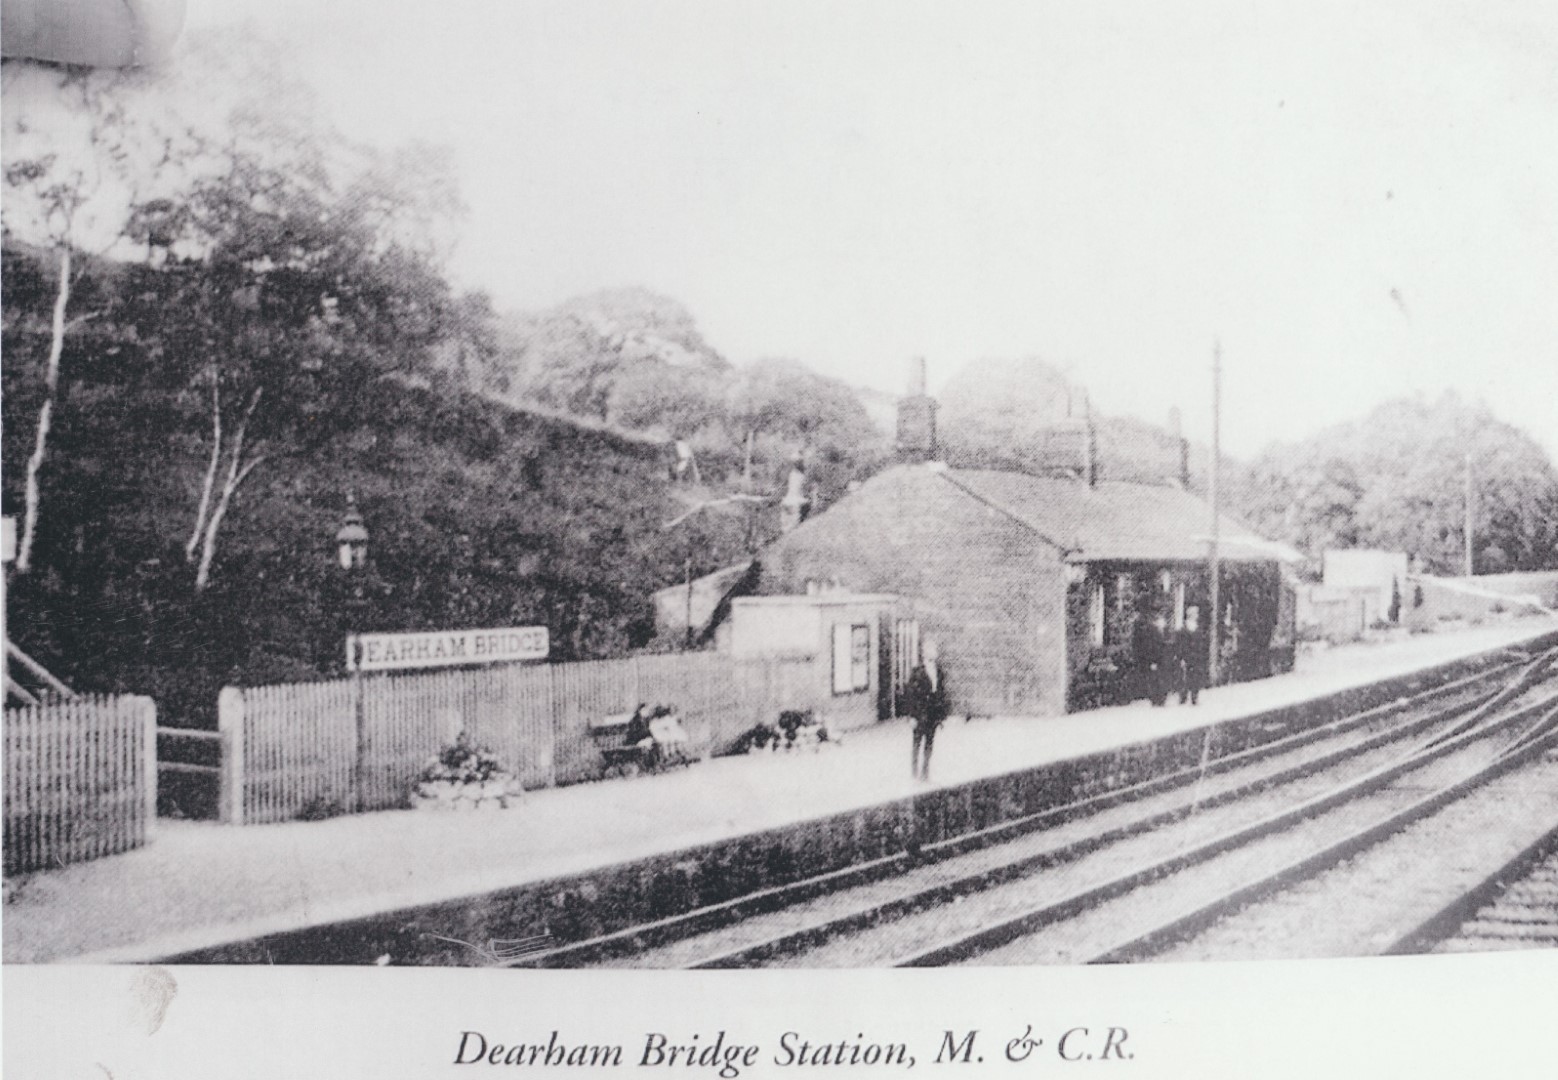 Dearham Bridge Station On Maryport And Carlisle Railway